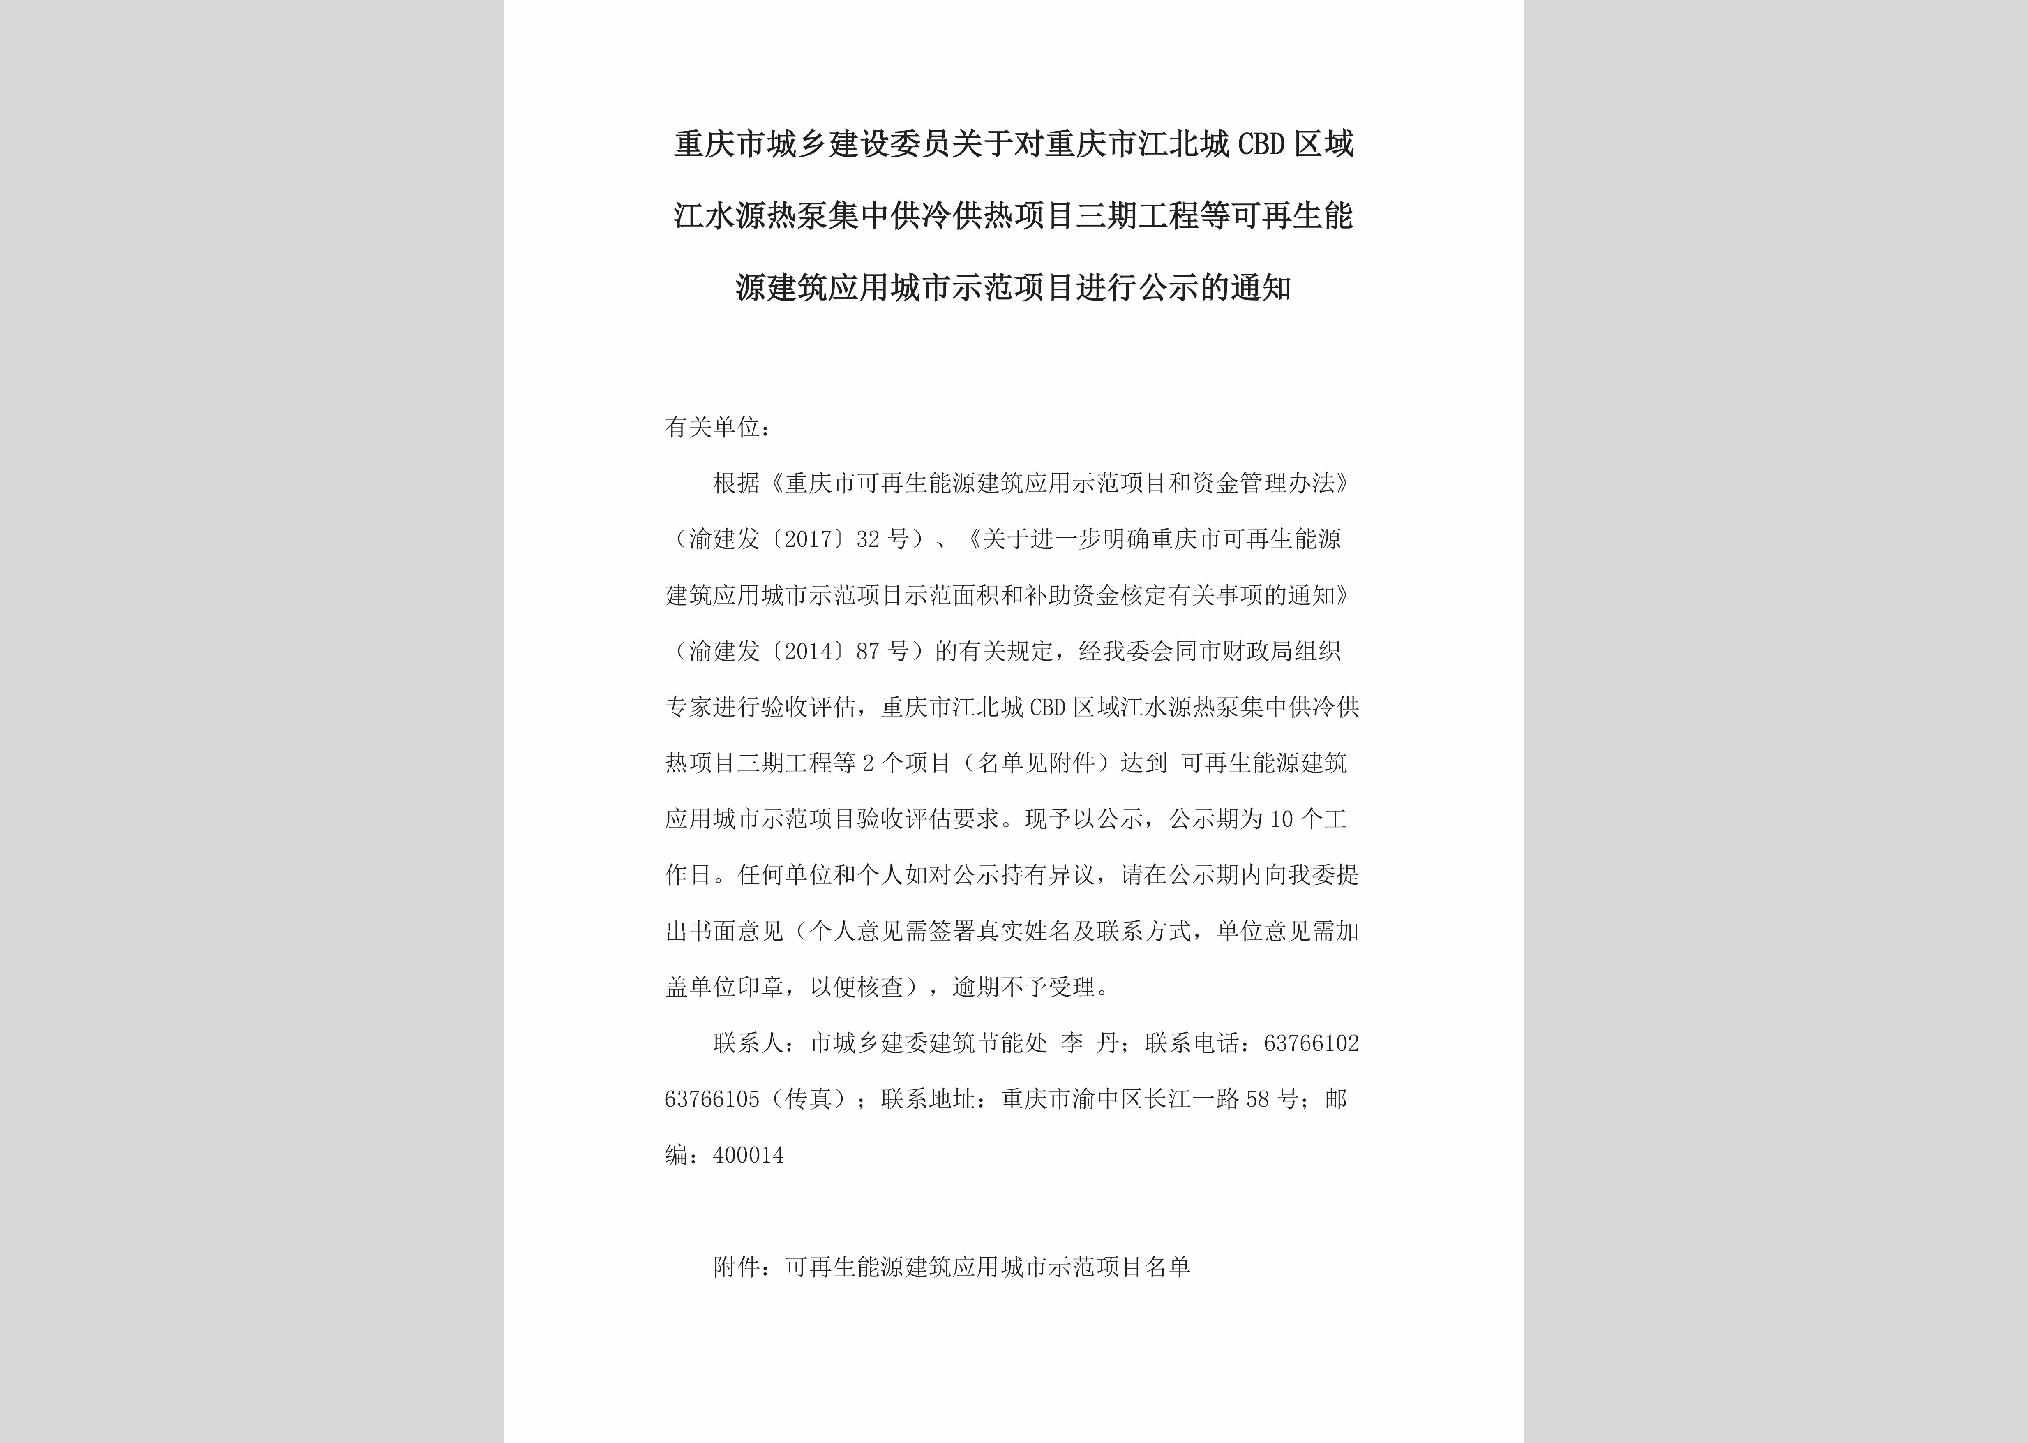 CQ-JSYRBJZG-2018：关于对重庆市江北城CBD区域江水源热泵集中供冷供热项目三期工程等可再生能源建筑应用城市示范项目进行公示的通知